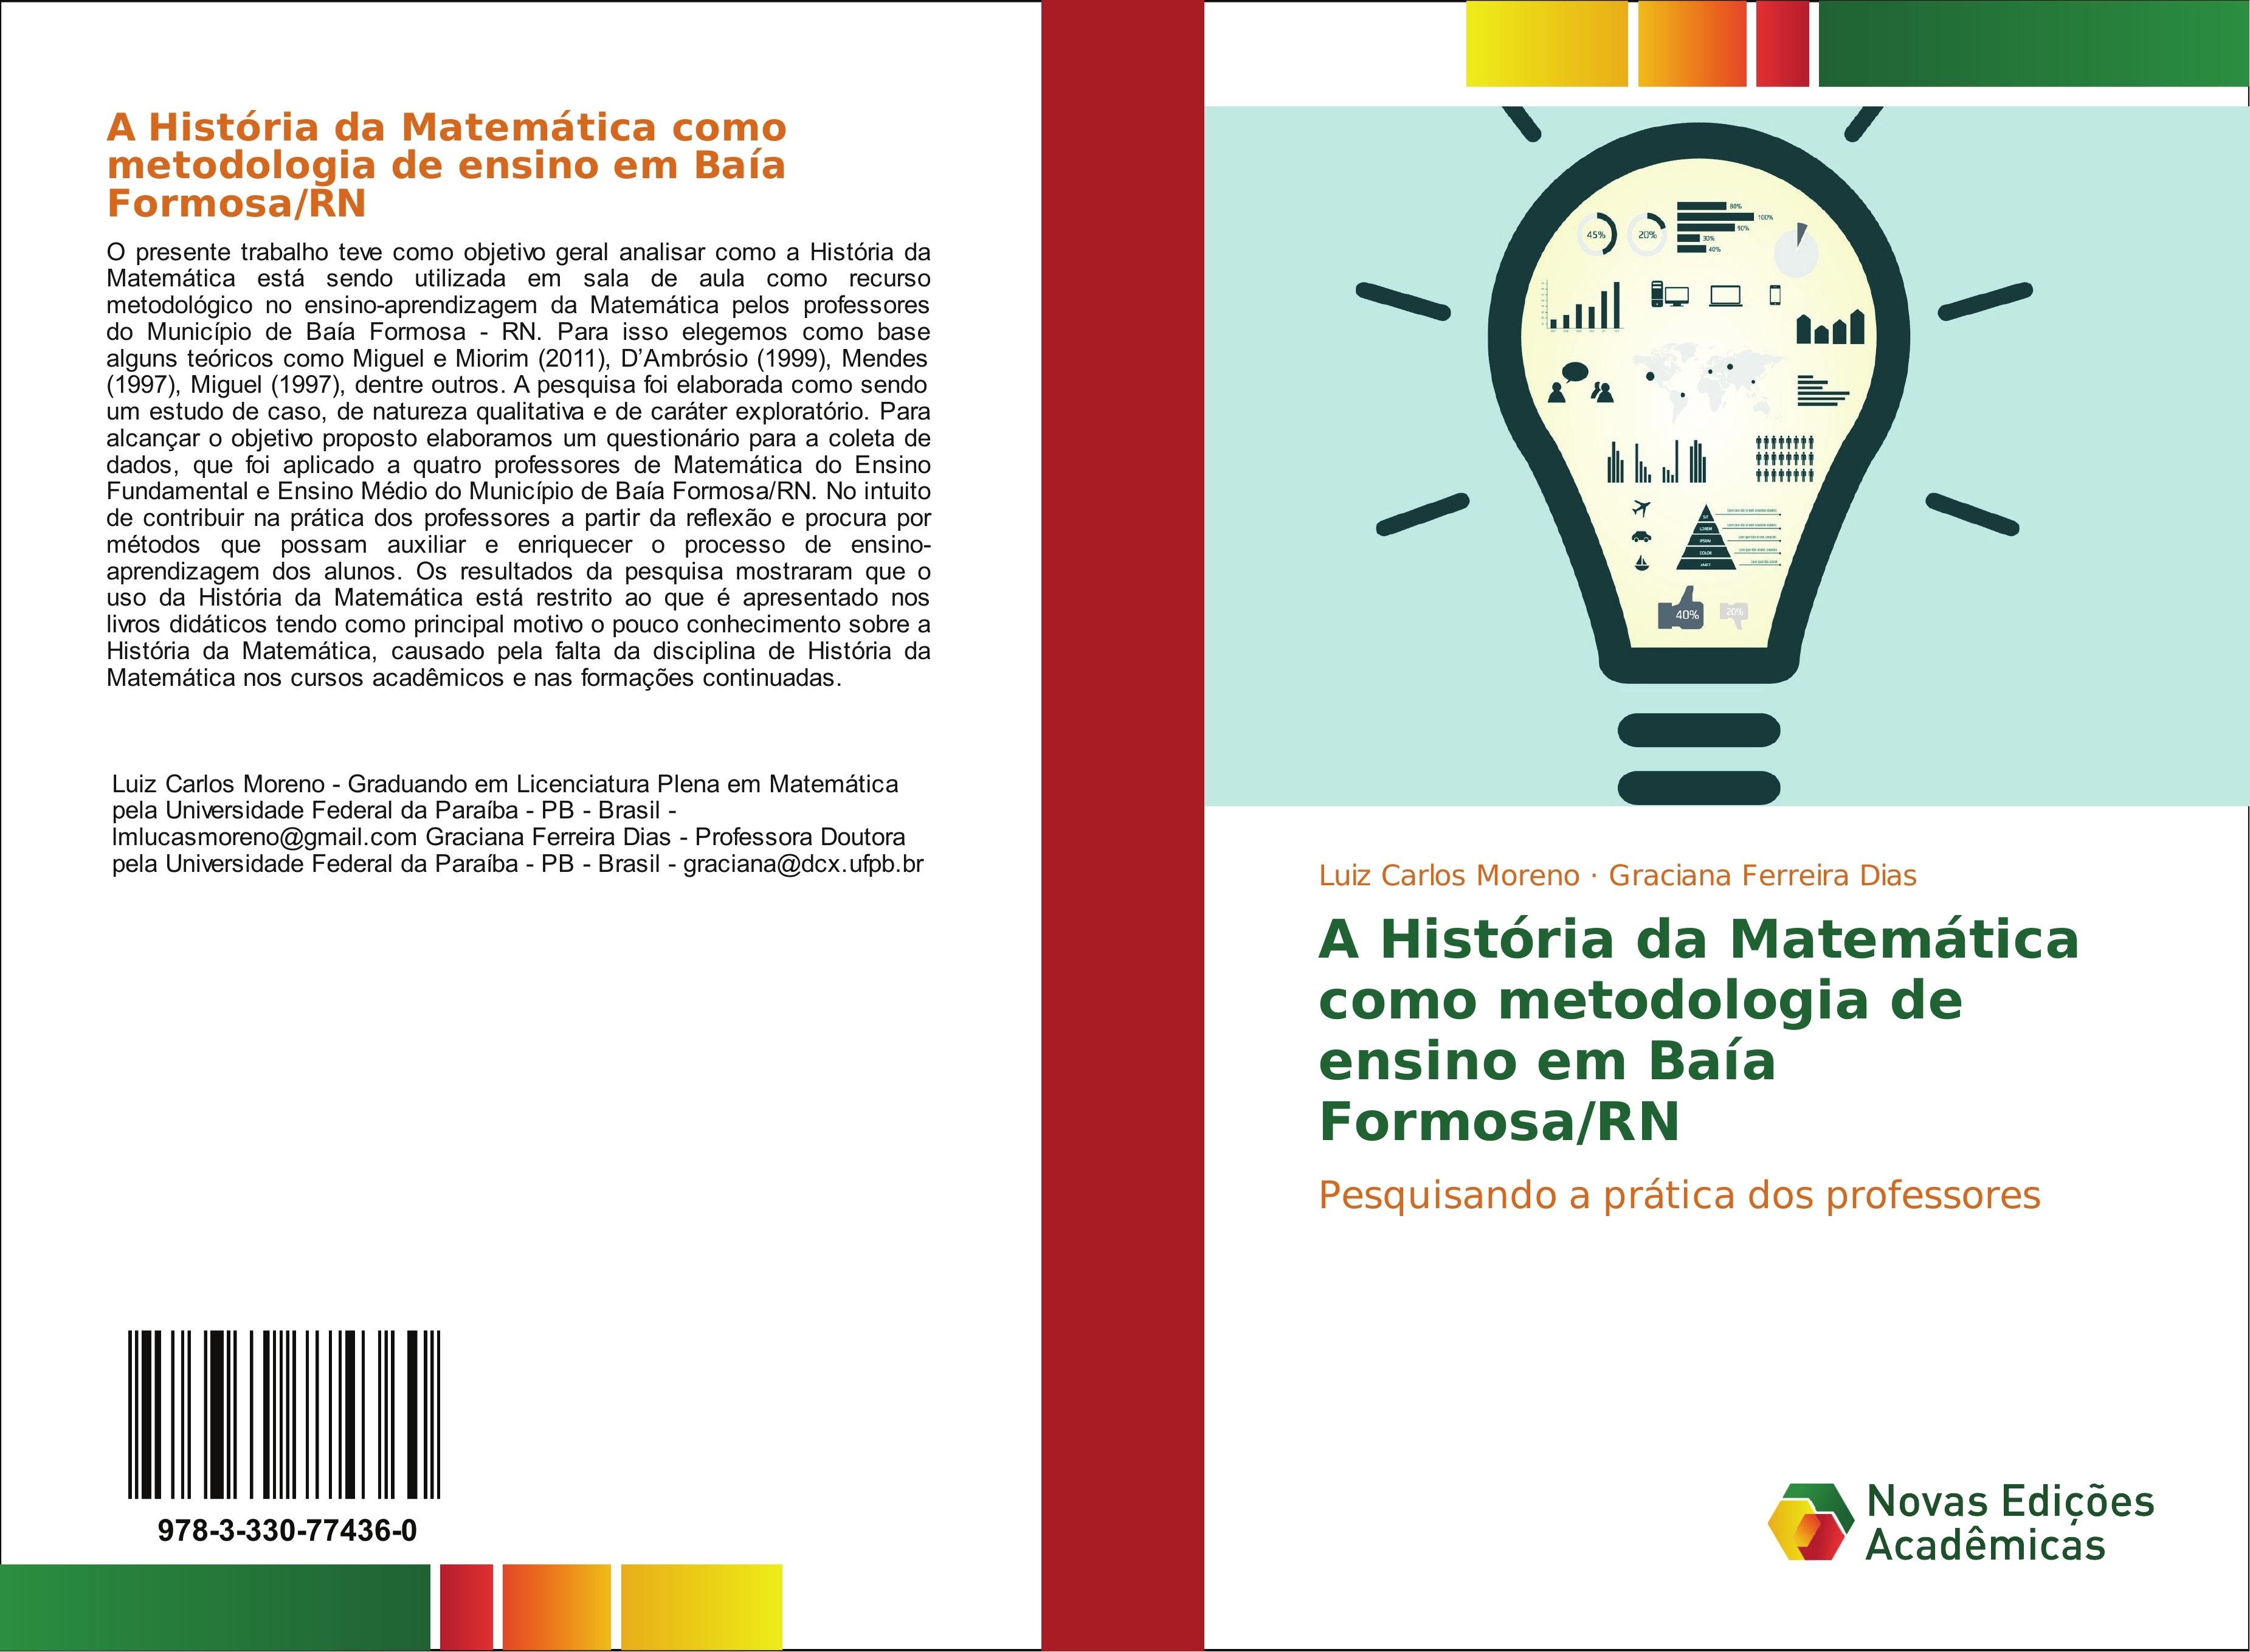 A História da Matemática como metodologia de ensino em Baía Formosa/RN - Luiz Carlos Moreno Graciana Ferreira Dias